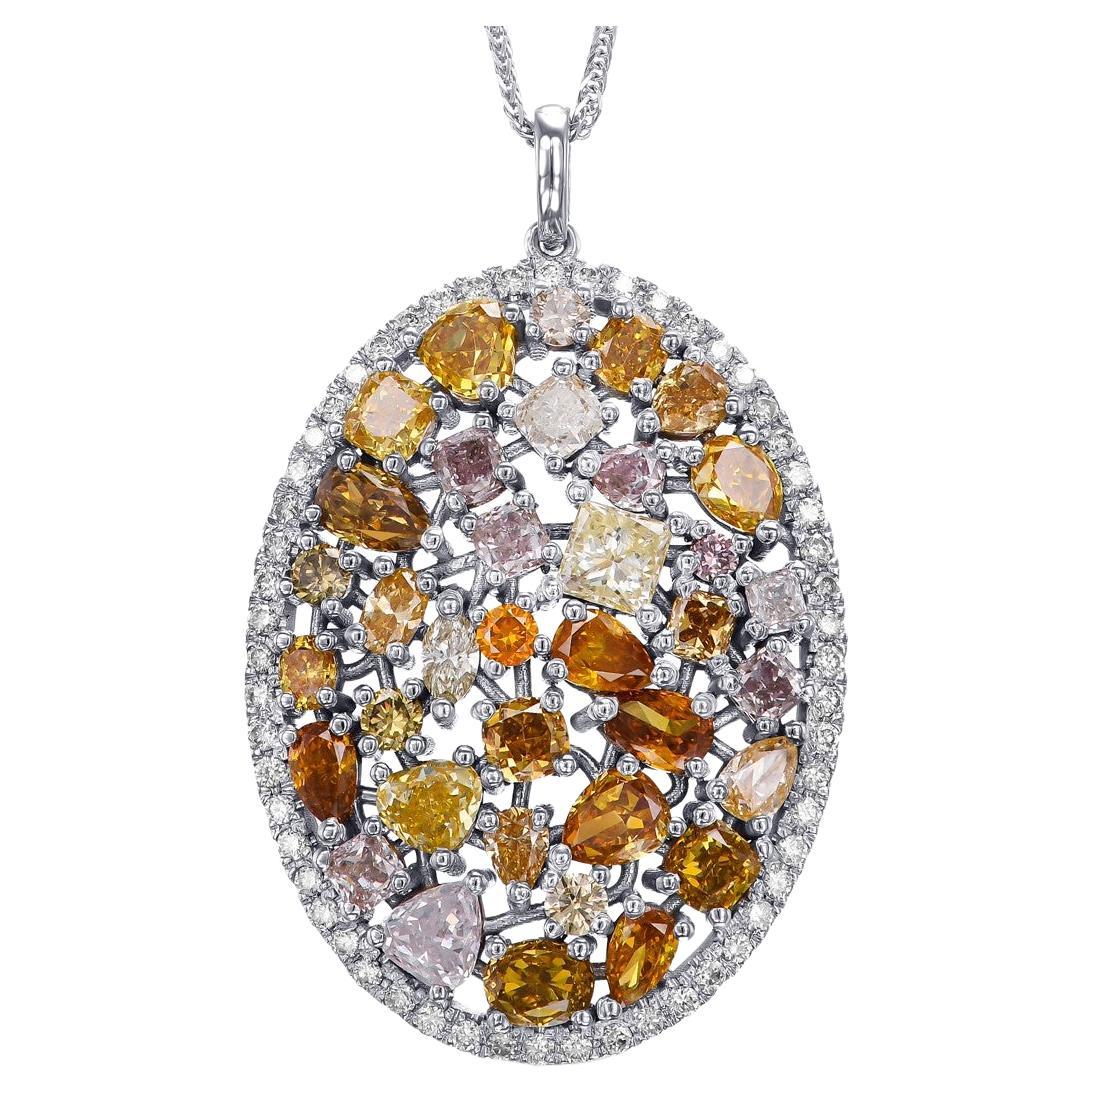 NO RESERVE - 5.65cttw Fancy Color Diamonds, 14 Karat White Gold Halo Pendant